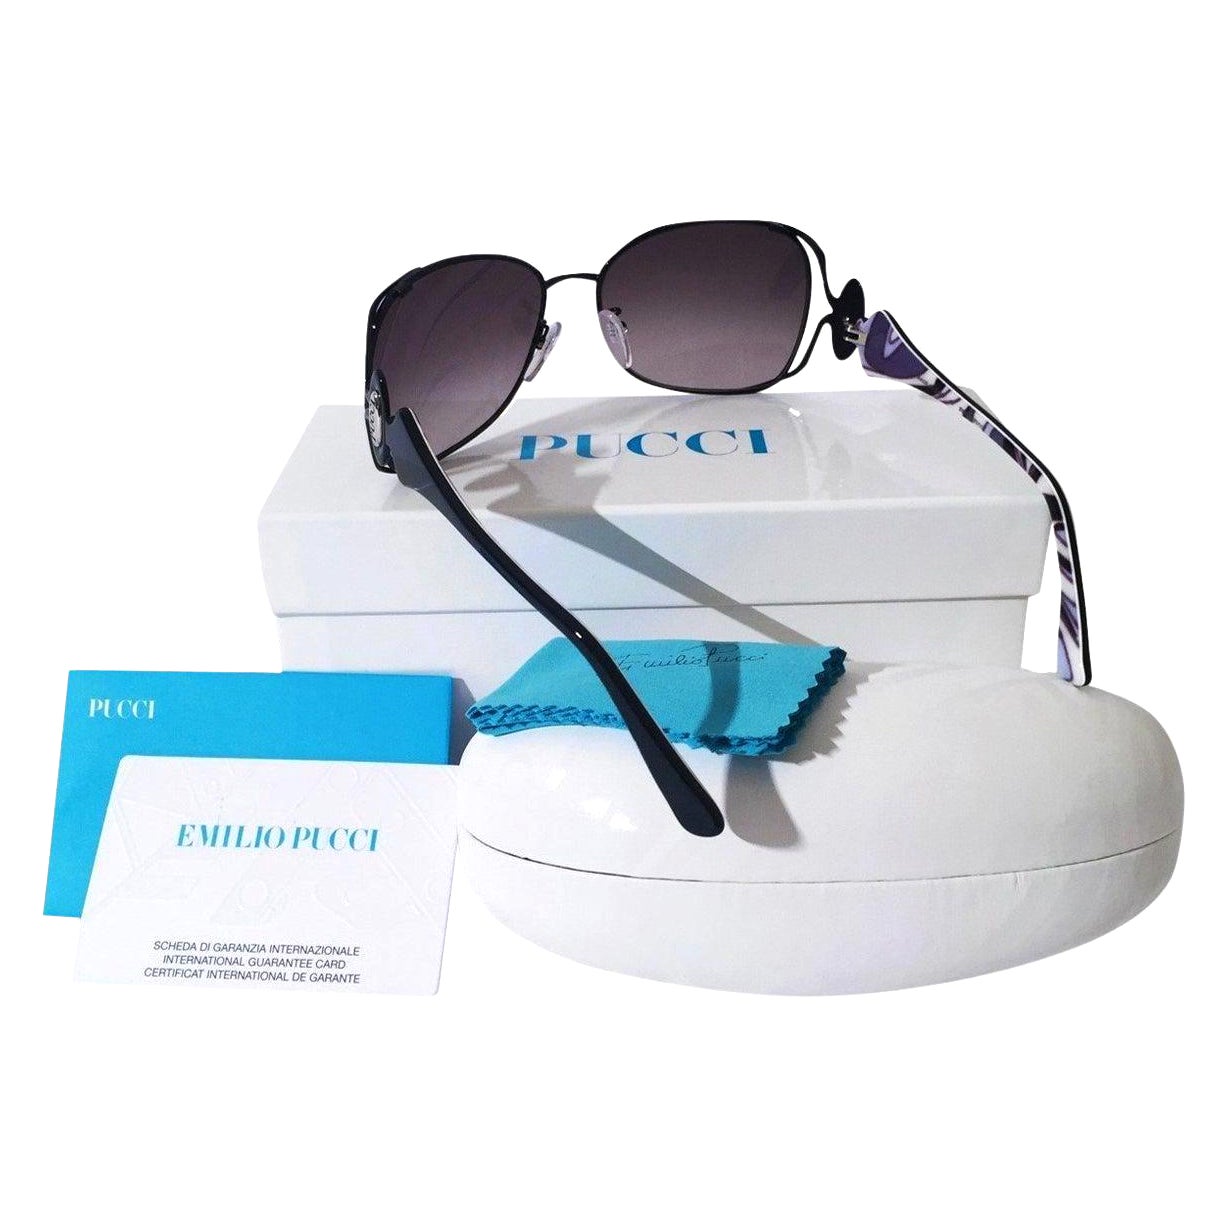 New Emilio Pucci Black Aviator Sunglasses With Case & Box